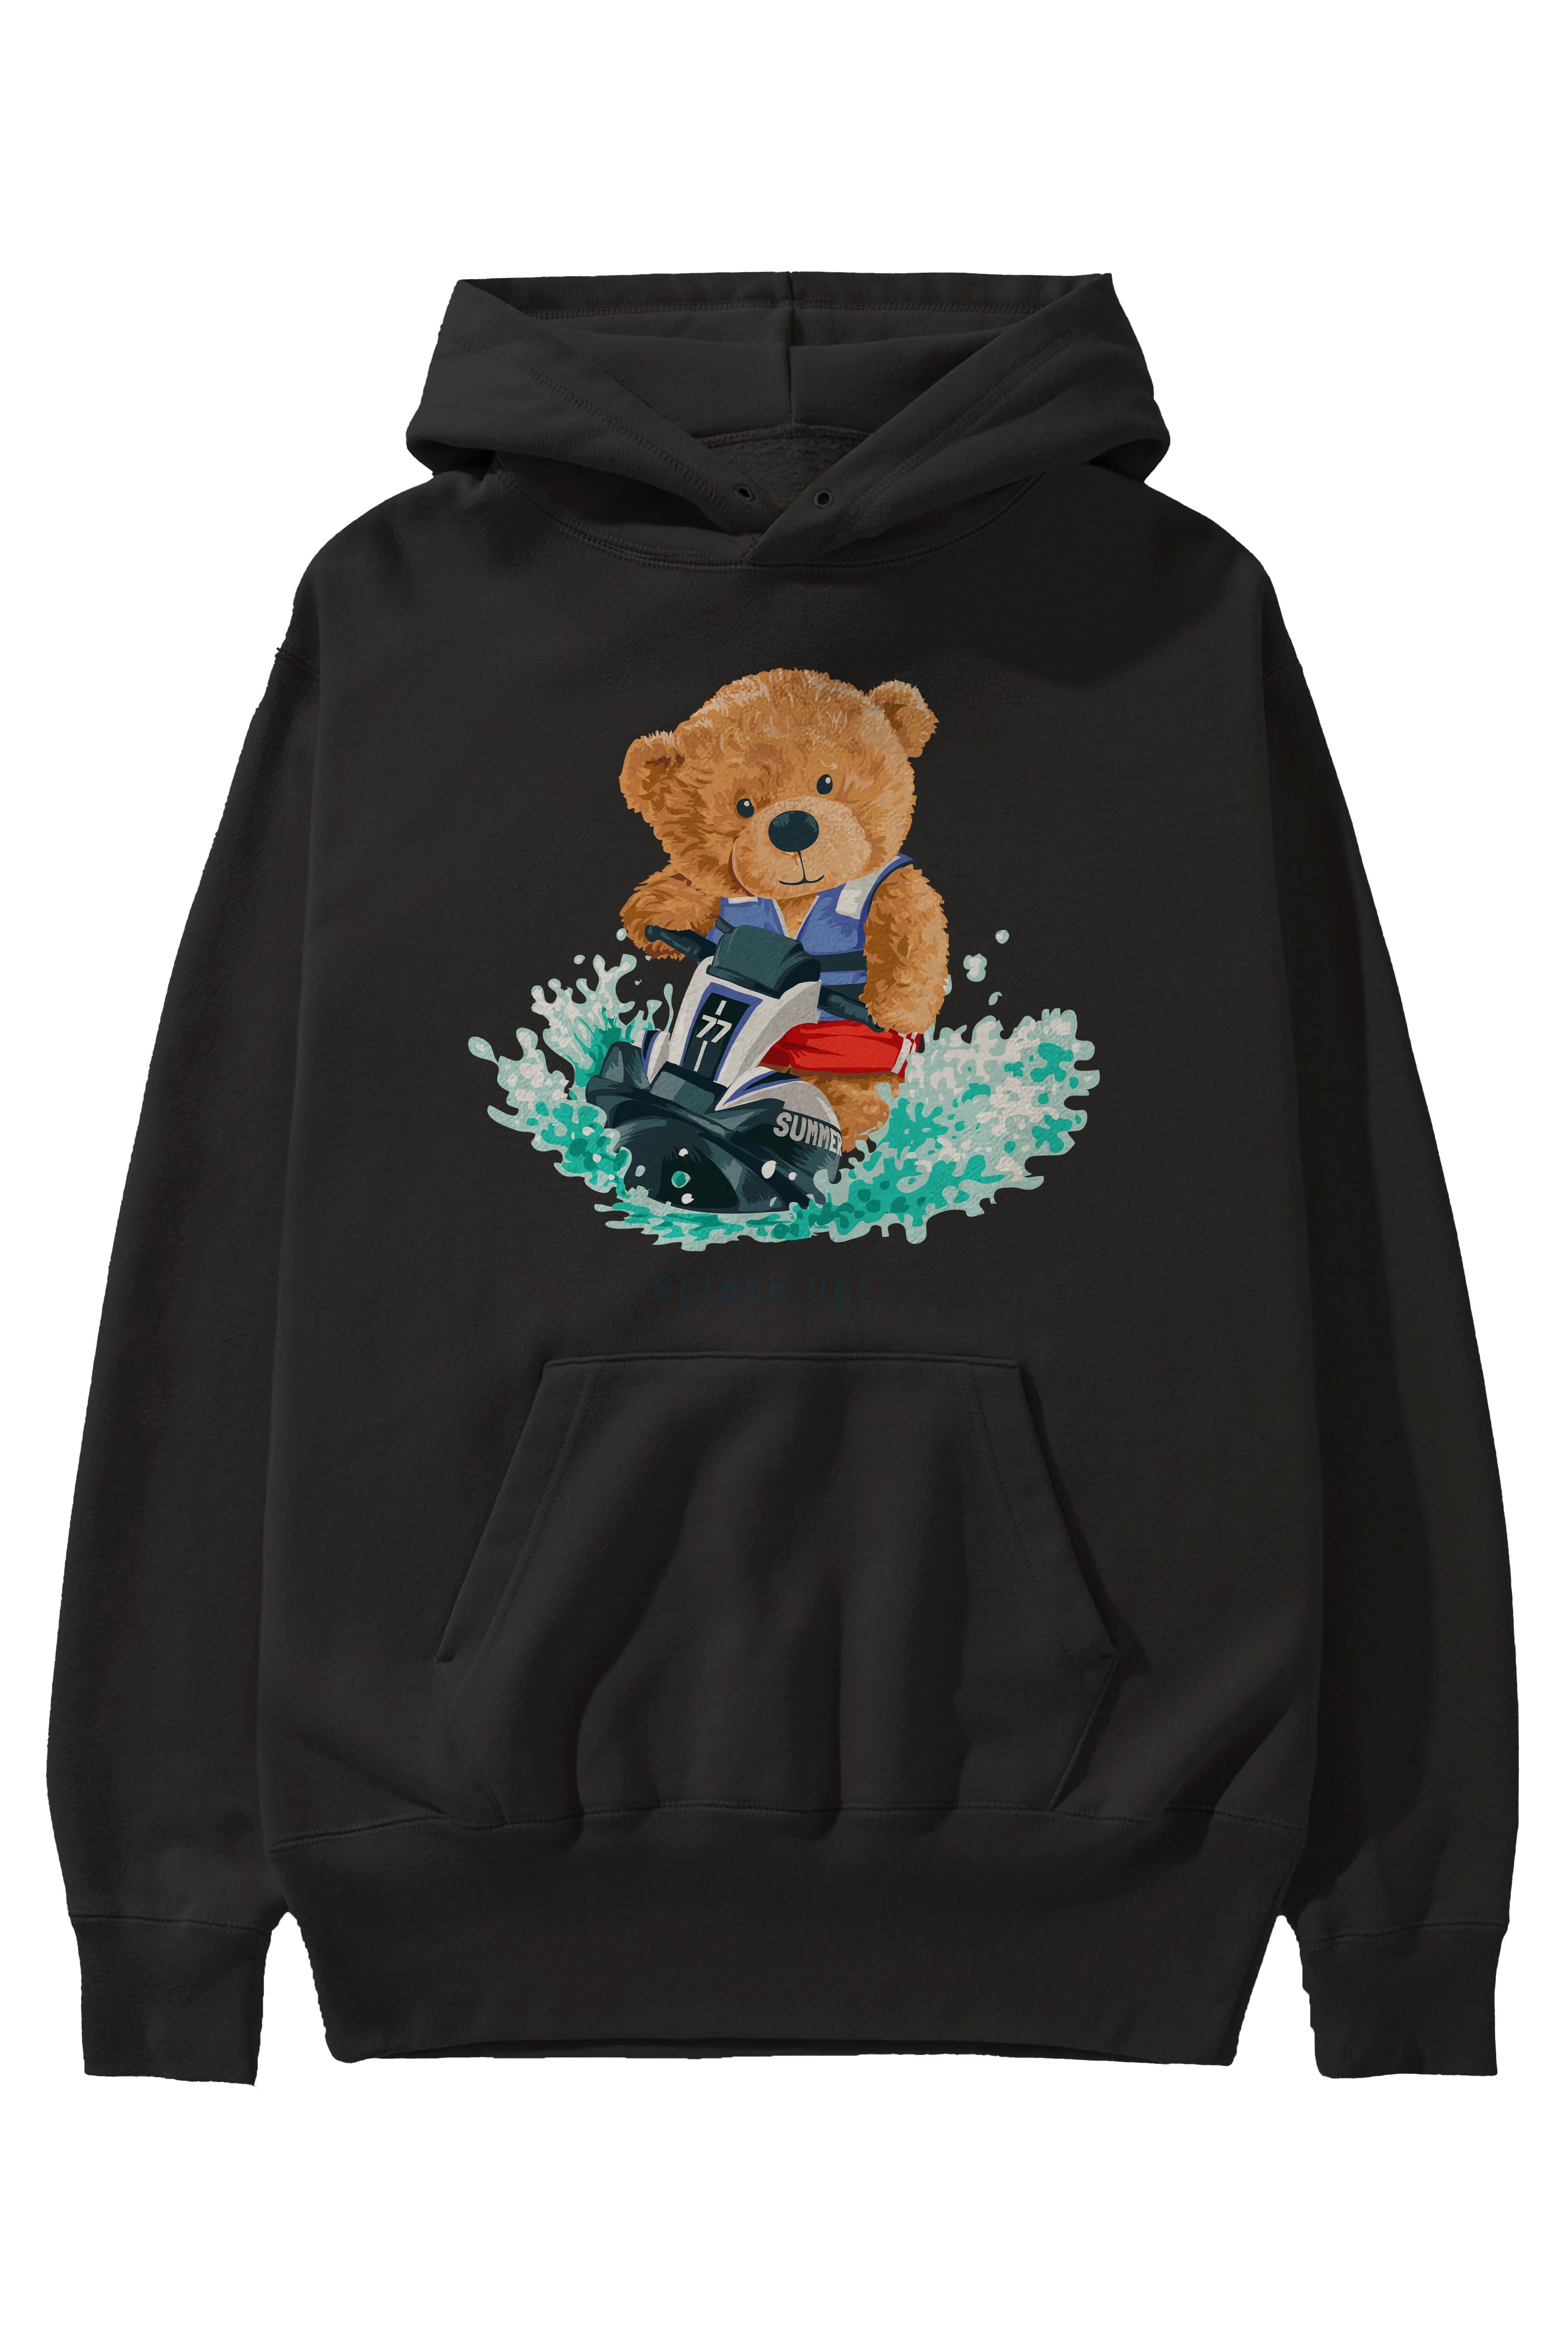 Teddy Bear Splash Up Ön Baskılı Hoodie Oversize Kapüşonlu Sweatshirt Erkek Kadın Unisex